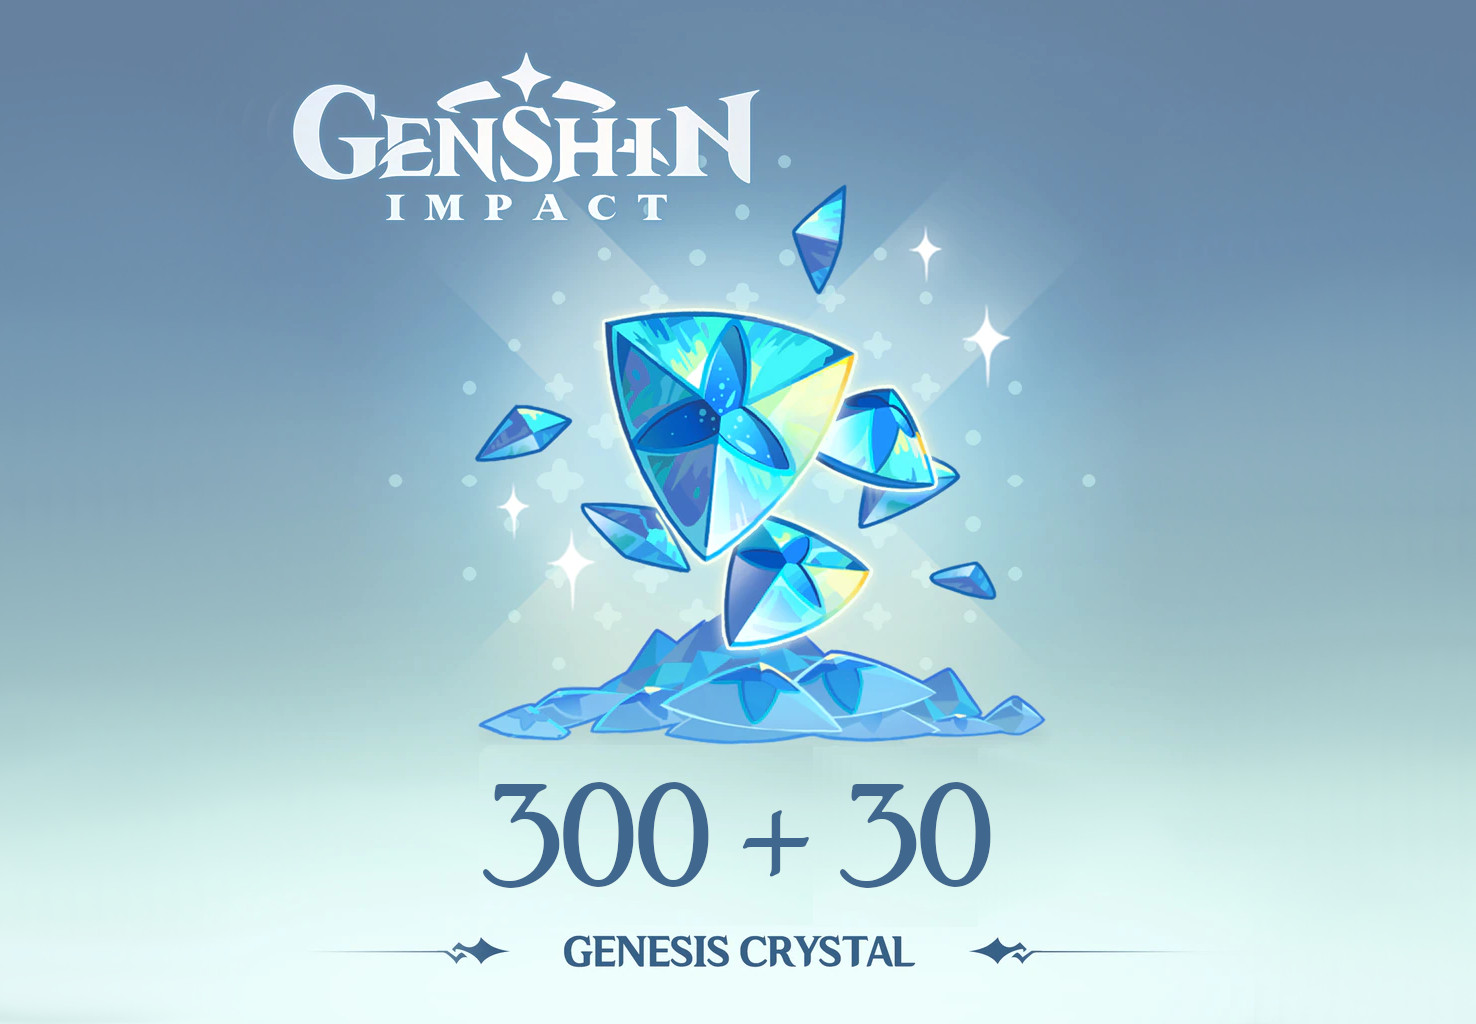 Genshin Impact - 300 + 30 Genesis Crystals Reidos Voucher, 5.37$